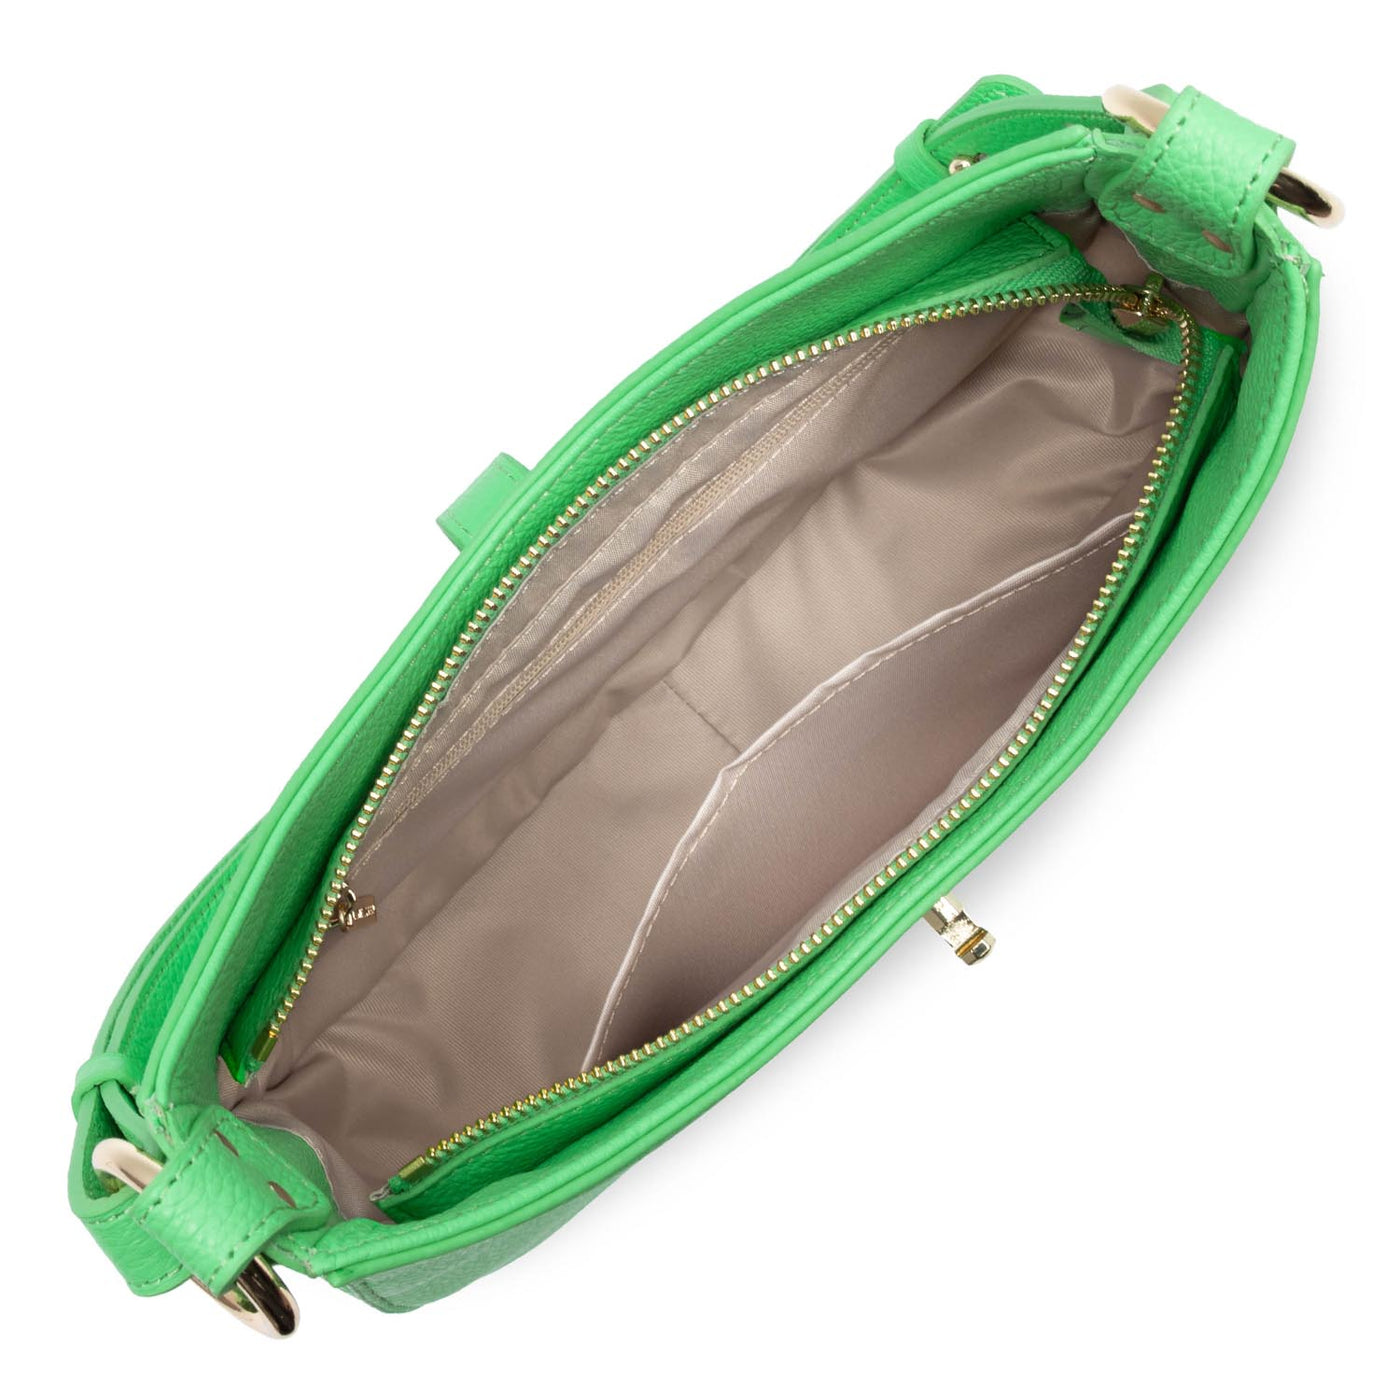 m shoulder bag - foulonné milano #couleur_vert-colo